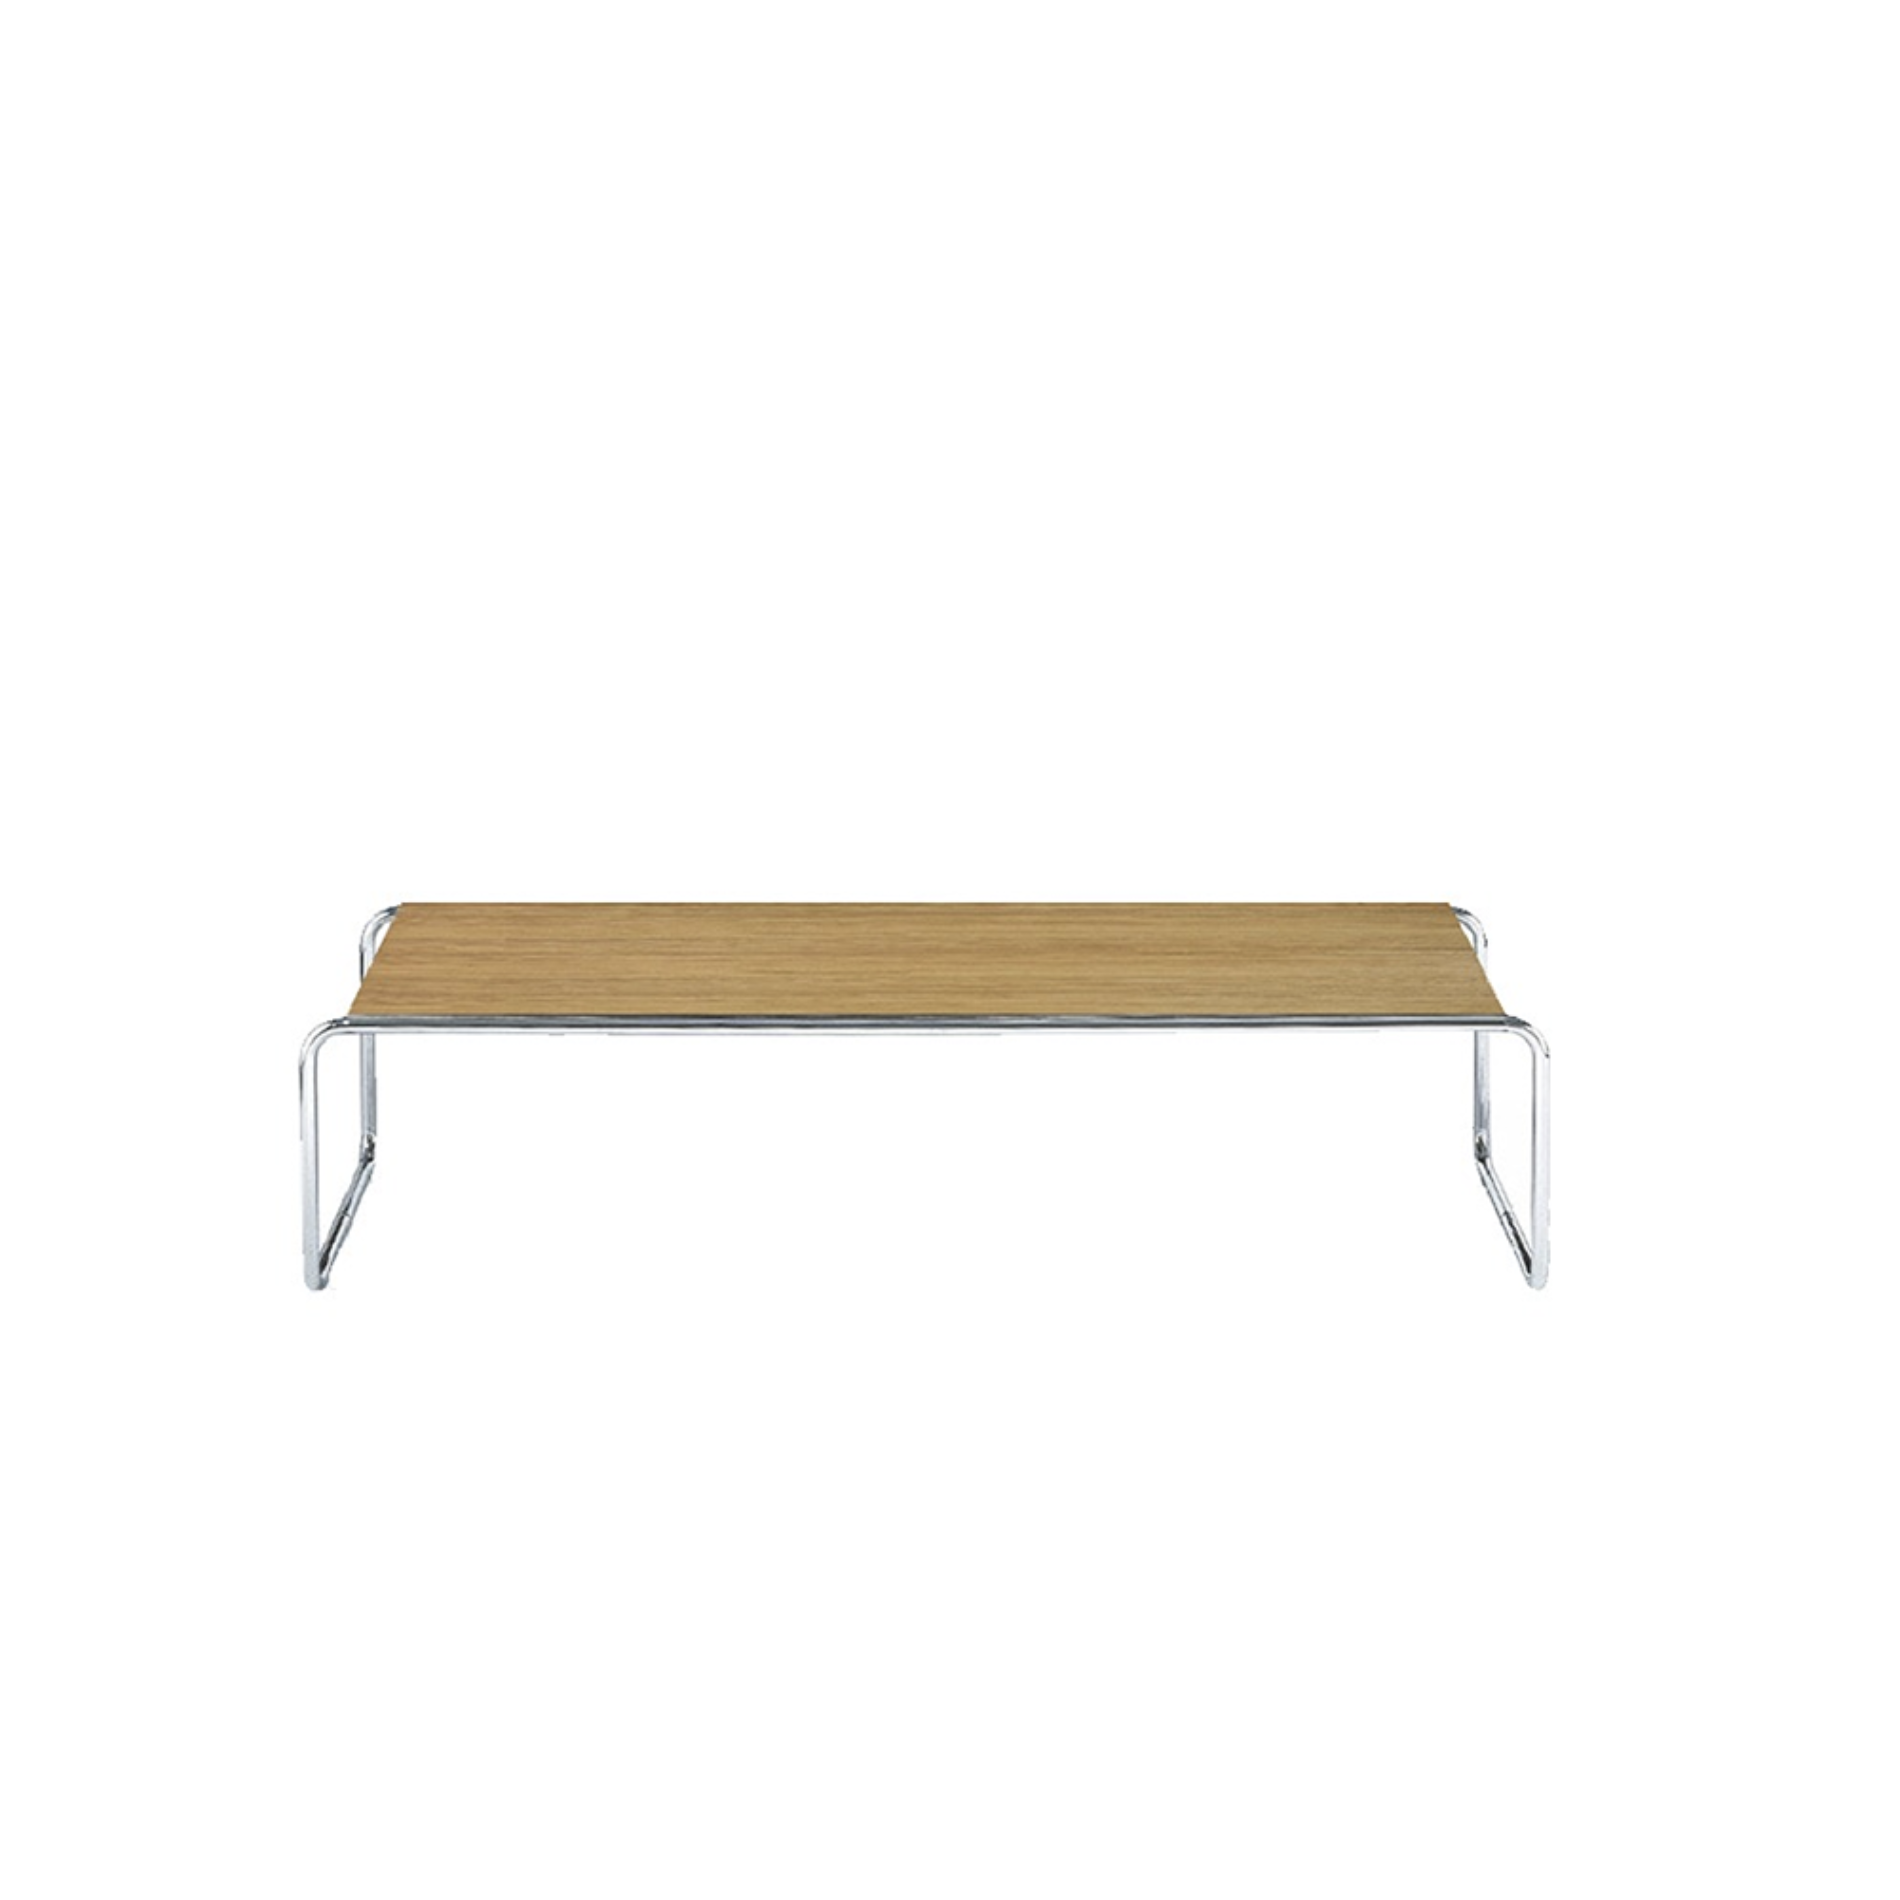 TECTA [Outlet|DP] K1C Oblique Couch Table - Oak 125Cm